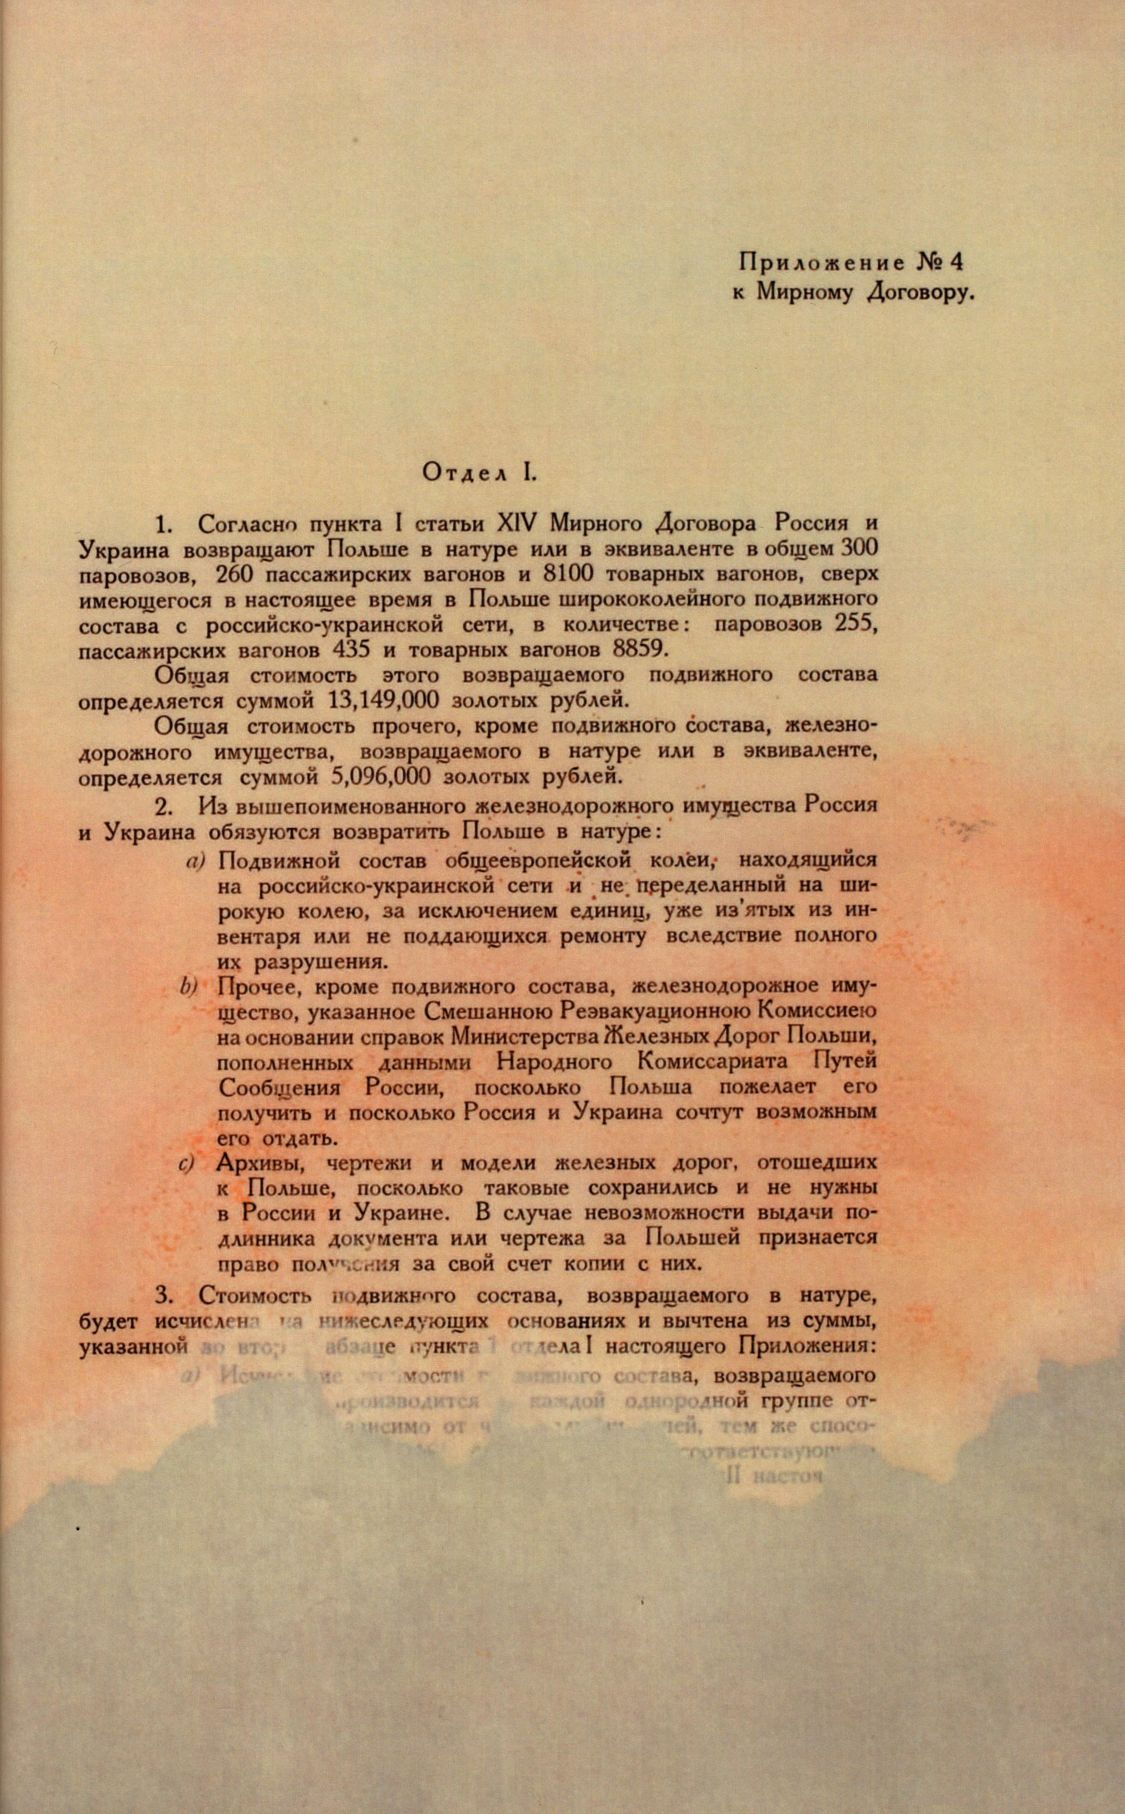 Traktat Pokoju między Polską a Rosją i Ukrainą podpisany w Rydze dnia 18 marca 1921 roku, s. 92, MSZ, sygn. 6739.